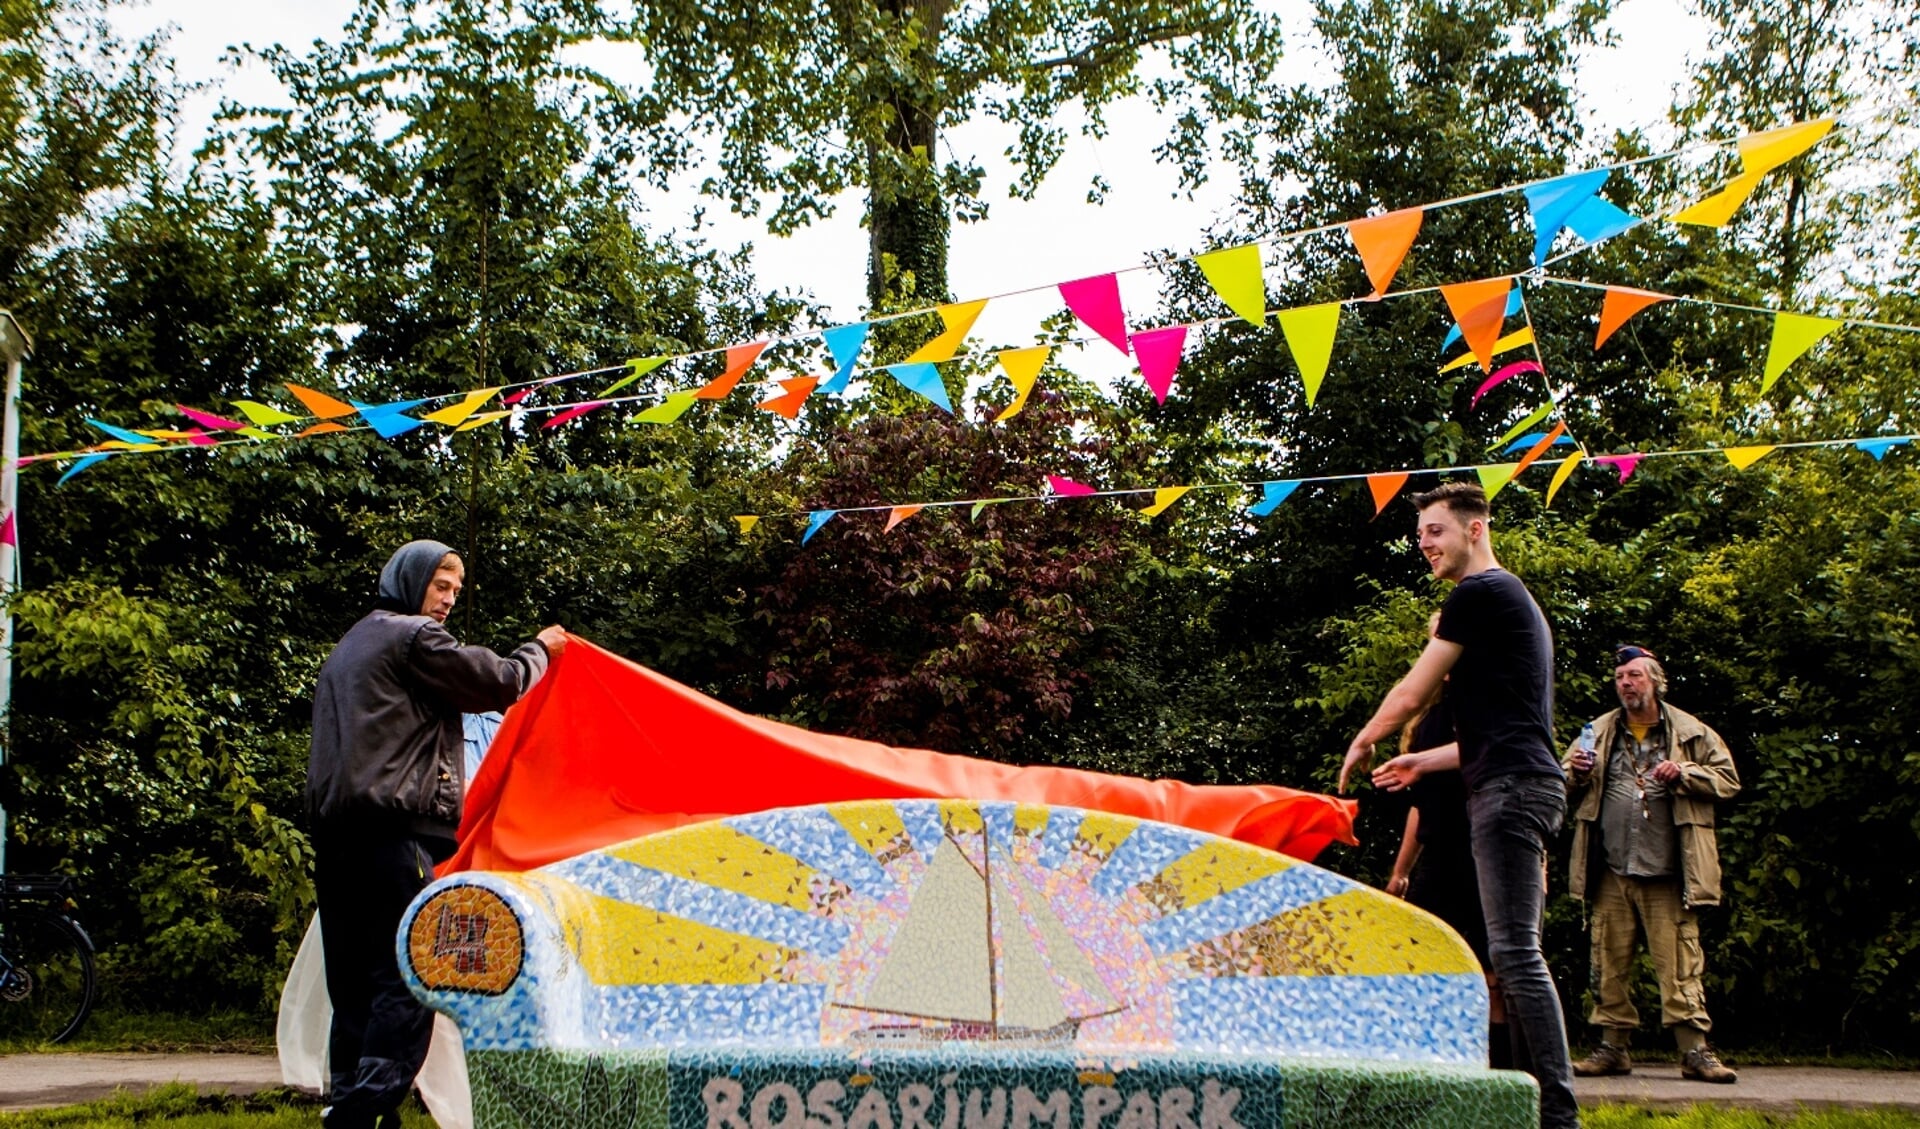 Laurens en Thijs van Local Heroes onthullen de social sofa voor het Rosariumpark.